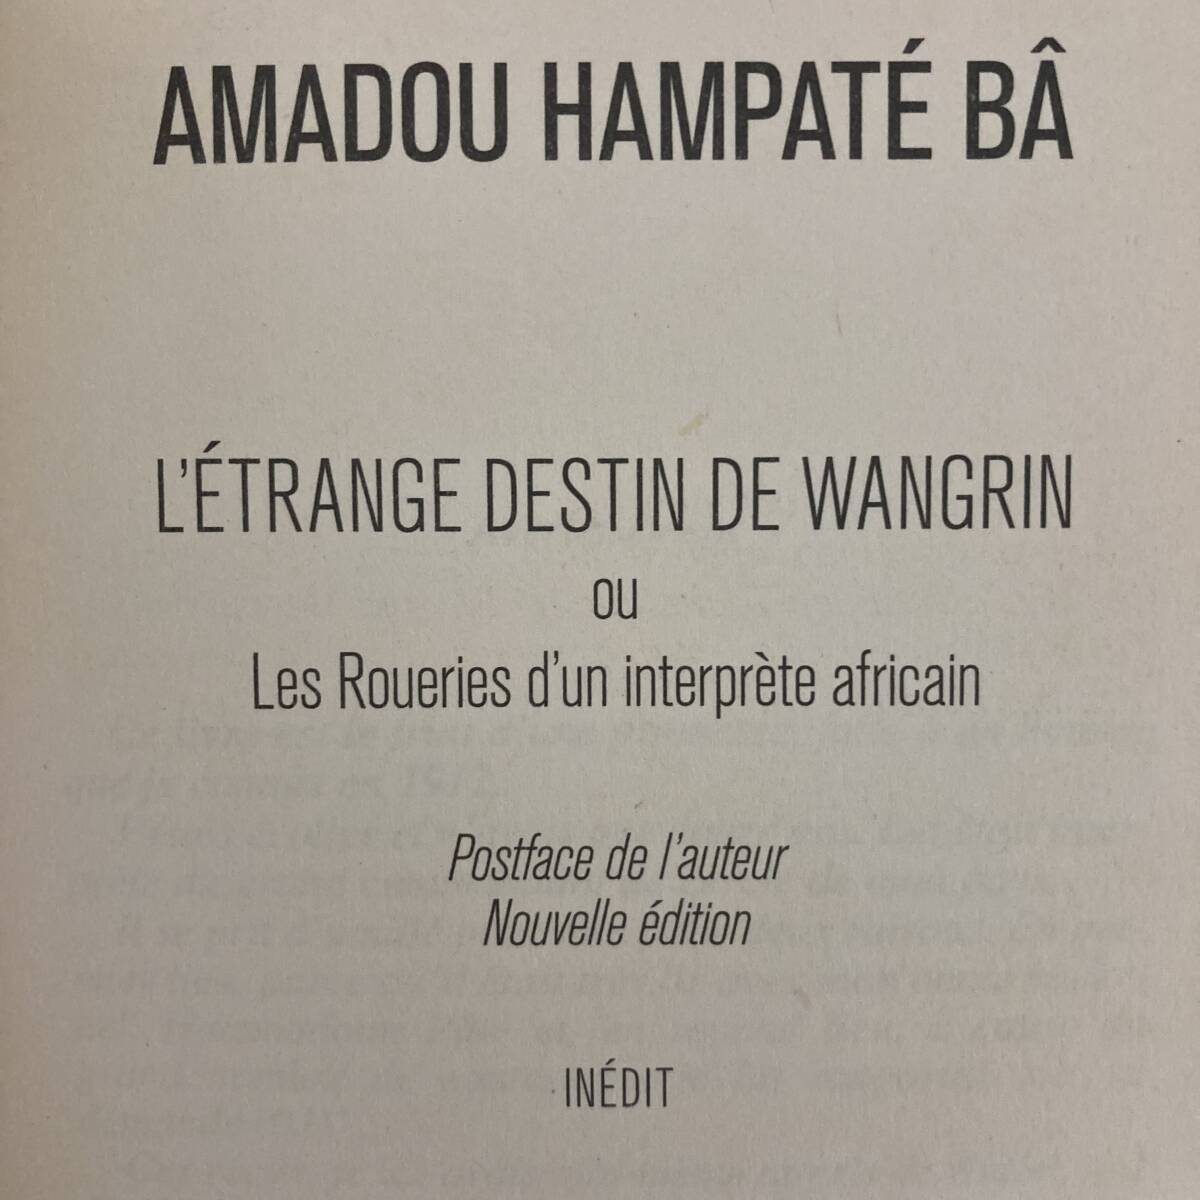 【仏語洋書】L’etrange destin de Wangrin / アマドゥ・ハンパテ・バー Amadou Hampate Ba（著）【アフリカ文学】_画像3